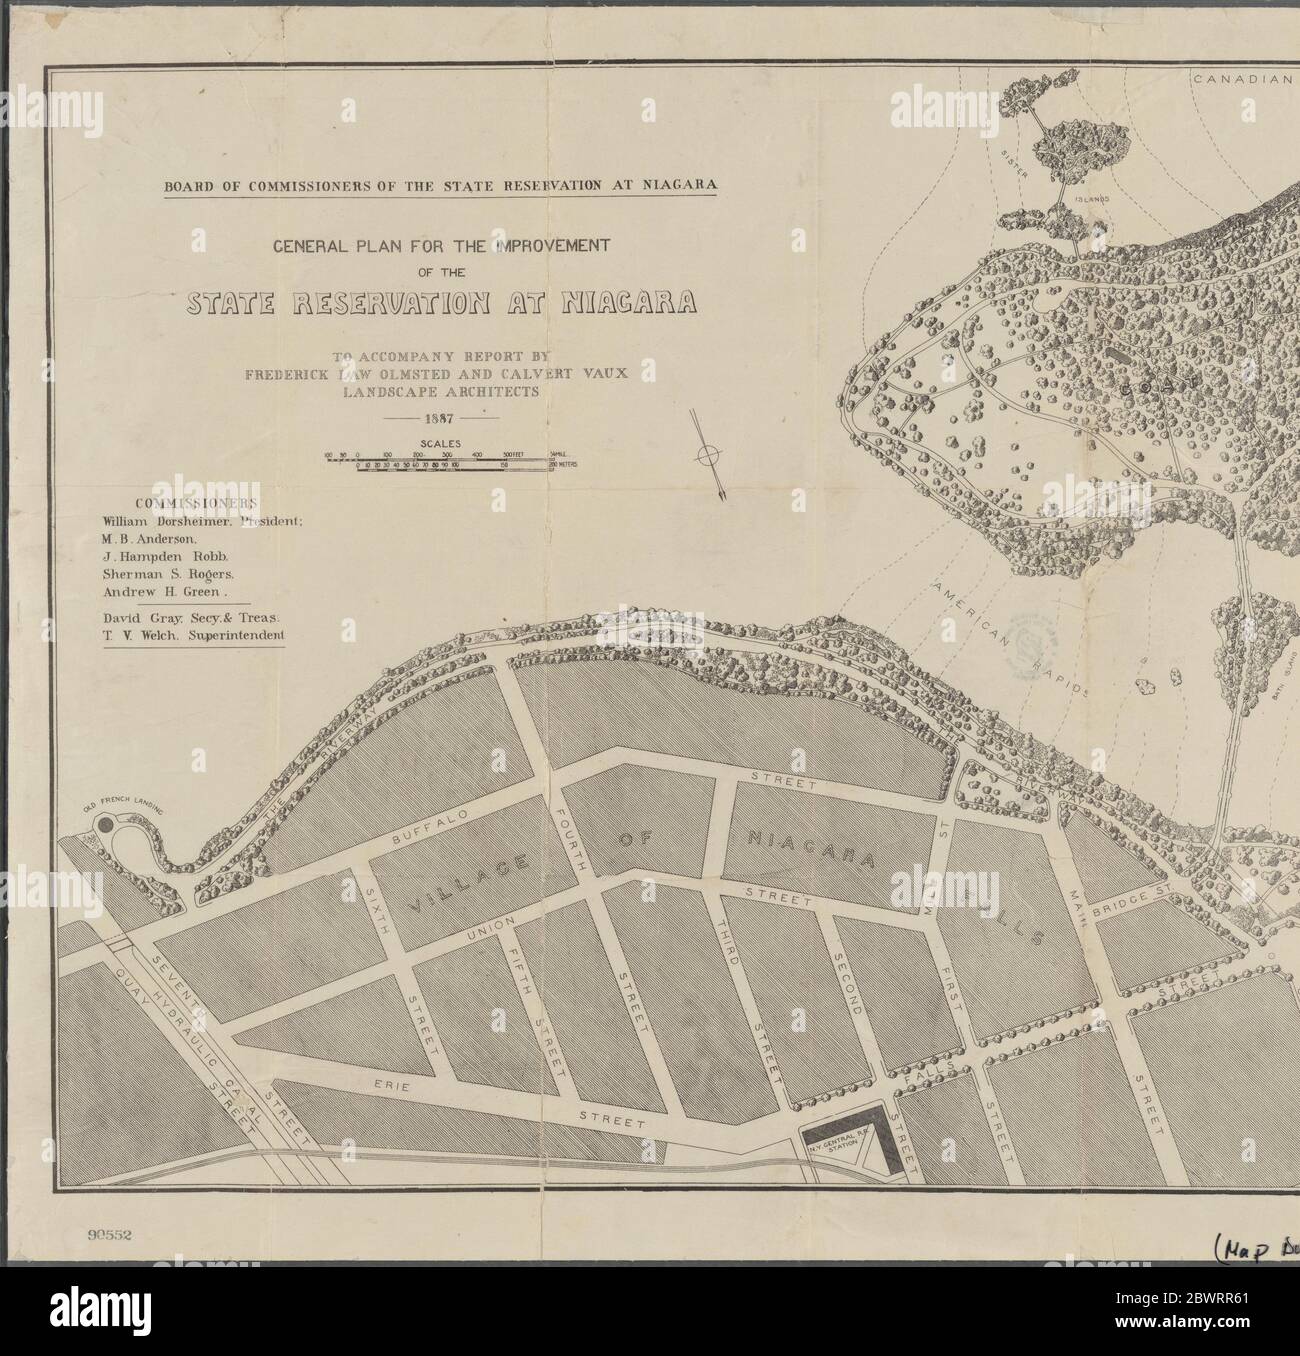 Plan general para la mejora de la reserva estatal en Niagara. Olmsted, Frederick Law, 1822-1903 (Creador) Vaux, Calvert, 1824-1895 (Creador) Foto de stock